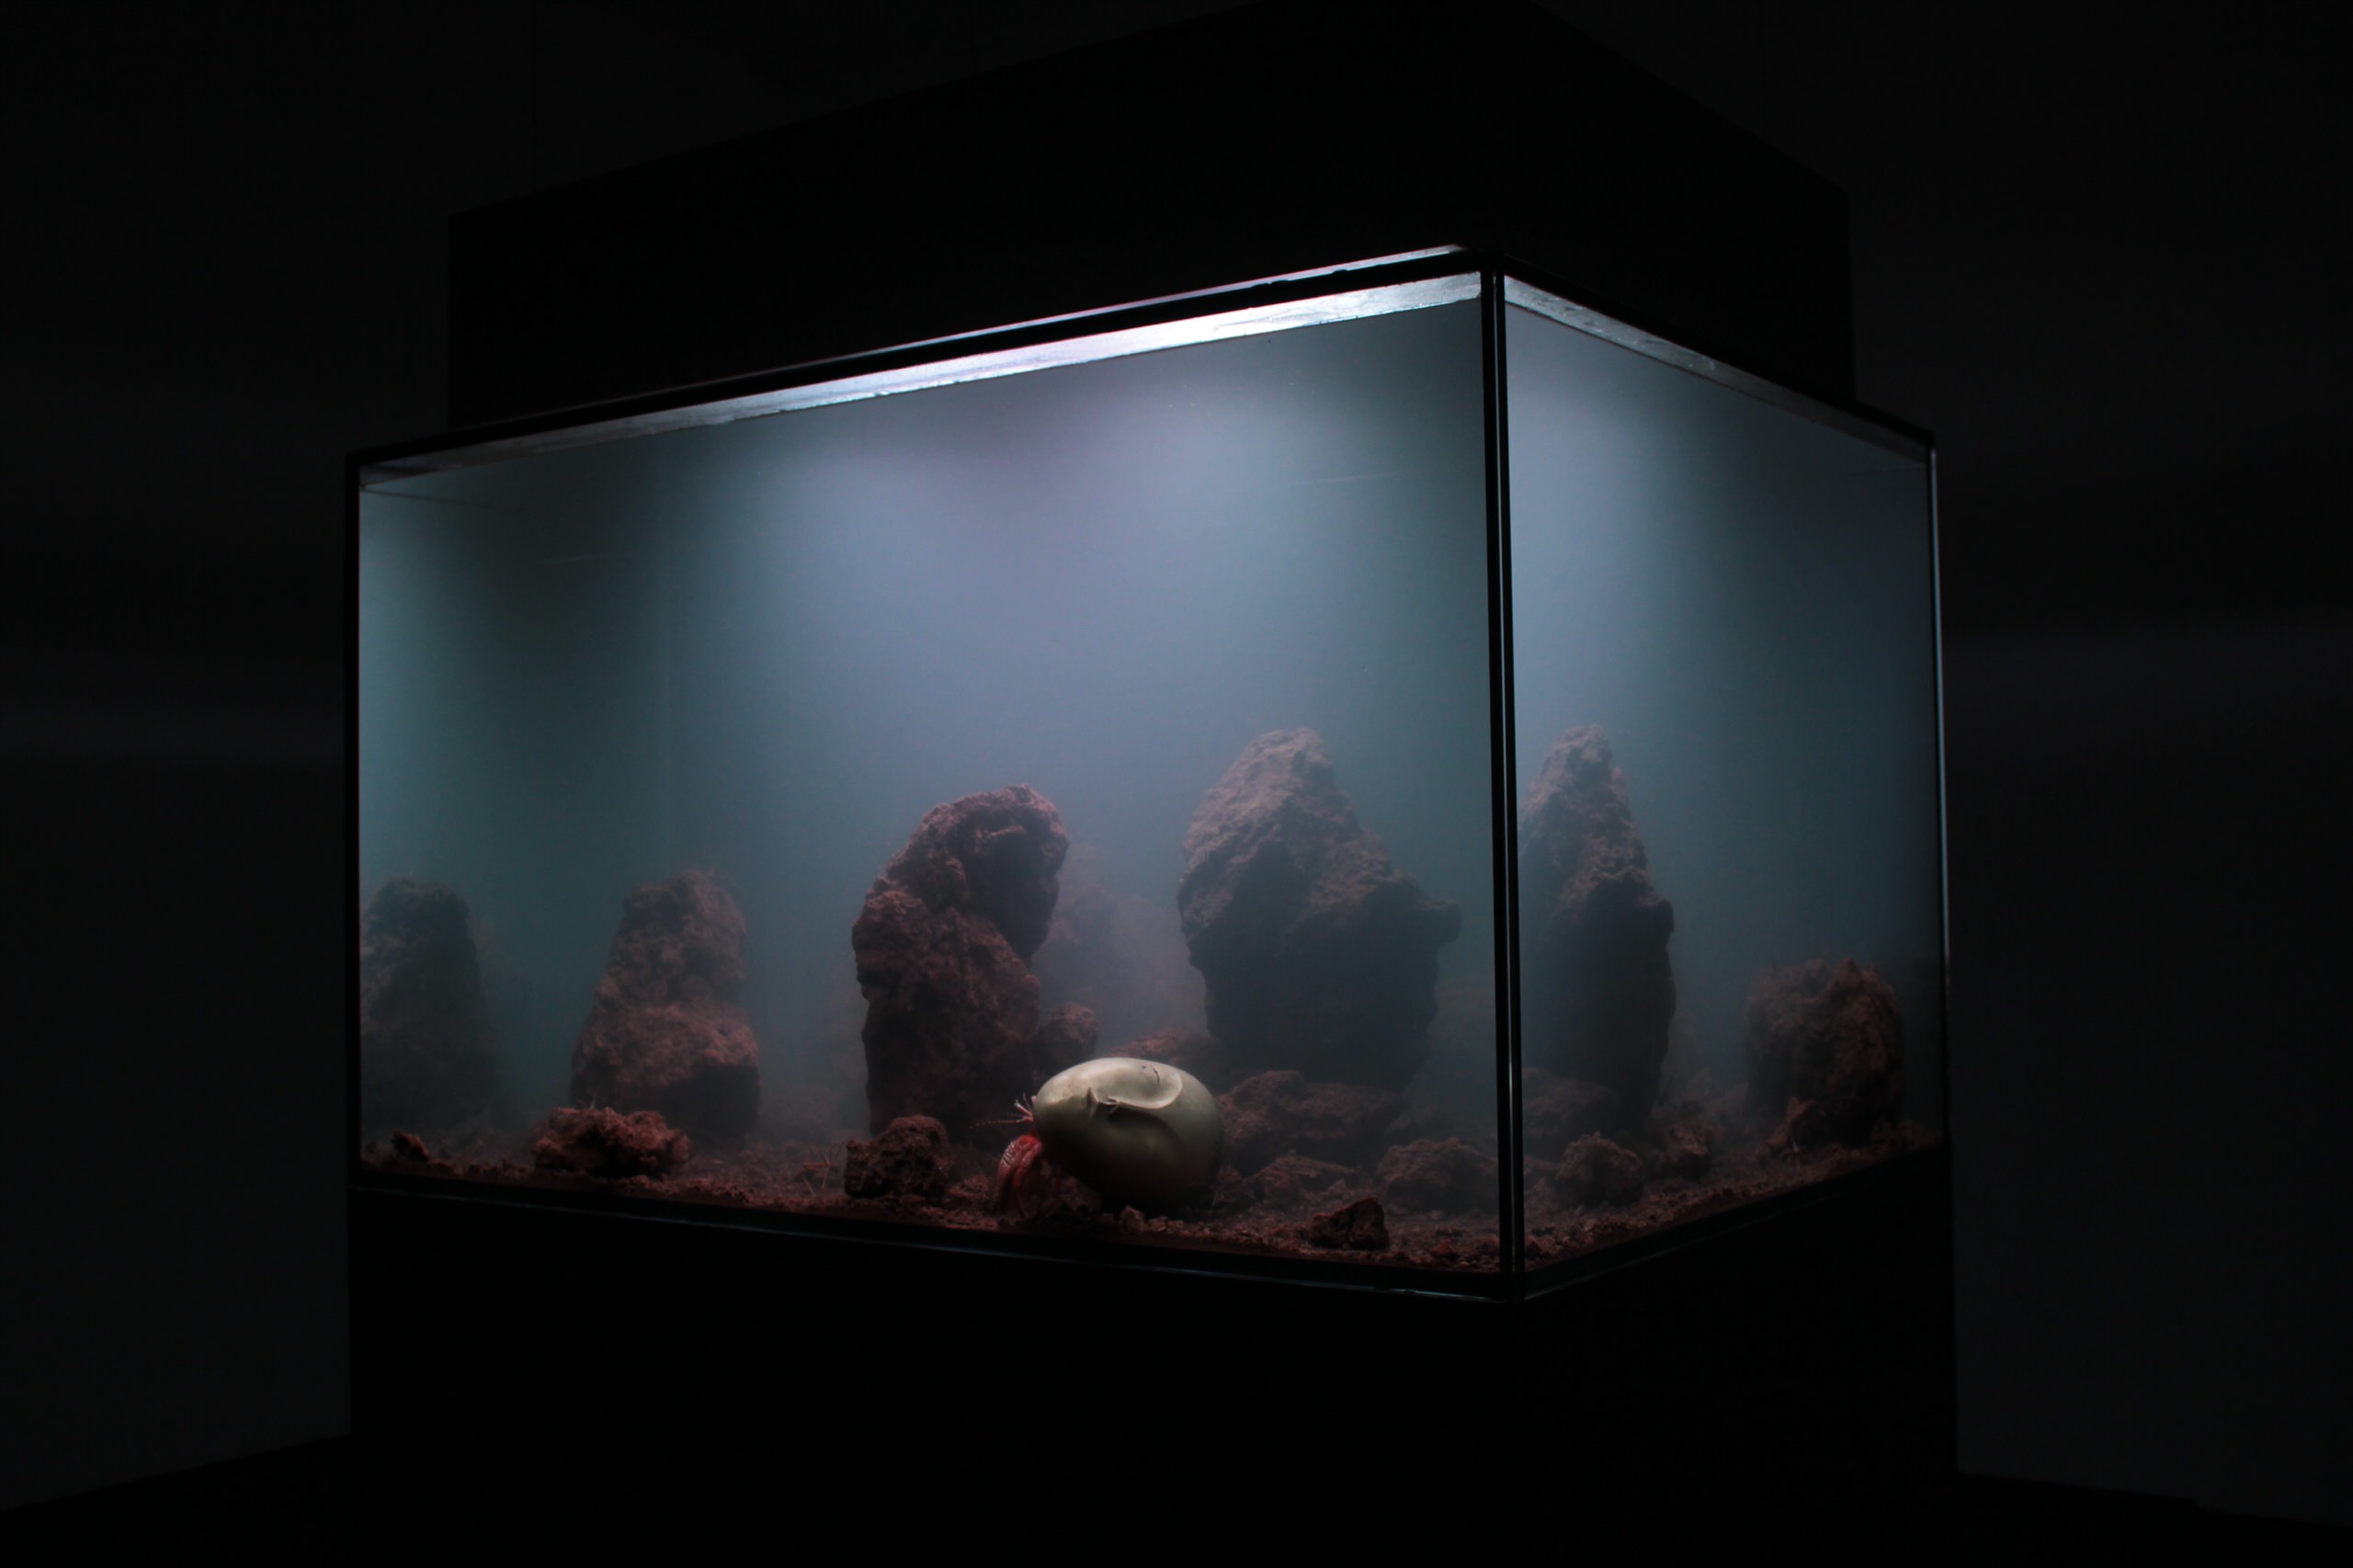 Водный мир: Как оформить аквариум внутри аквариумы, аквариум, аквариума, Однако, морских, камни, можно, композиции, случае, более, морской, помогает, внимание, этого, камней, морского, нужно, правилам, больше, может